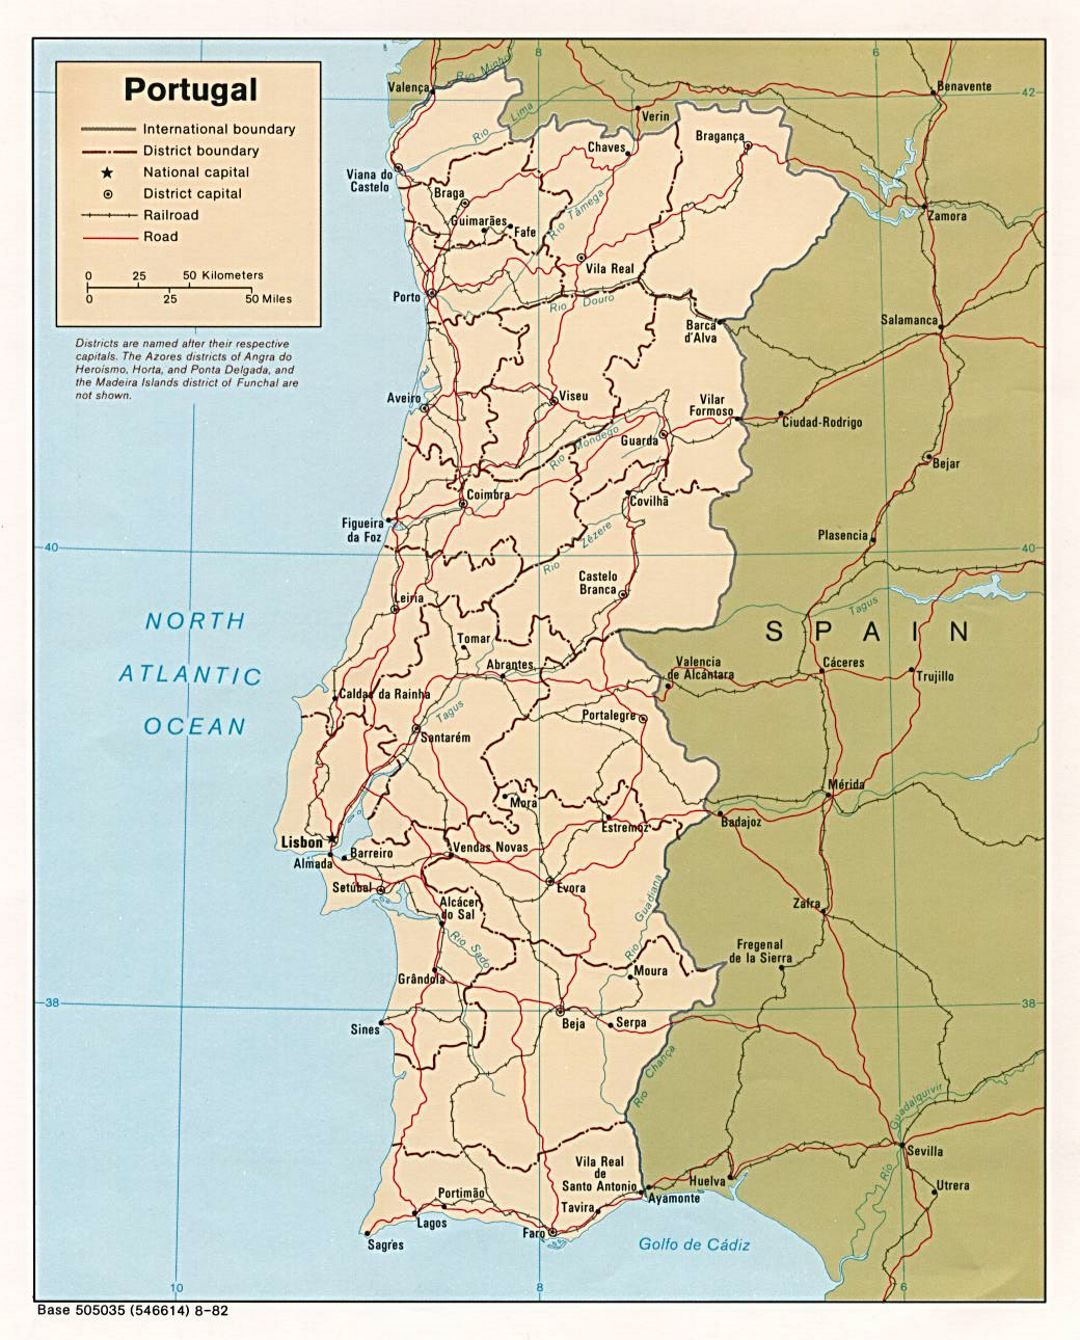 Detallado mapa político y administrativo de Portugal con carreteras y principales ciudades - 1982